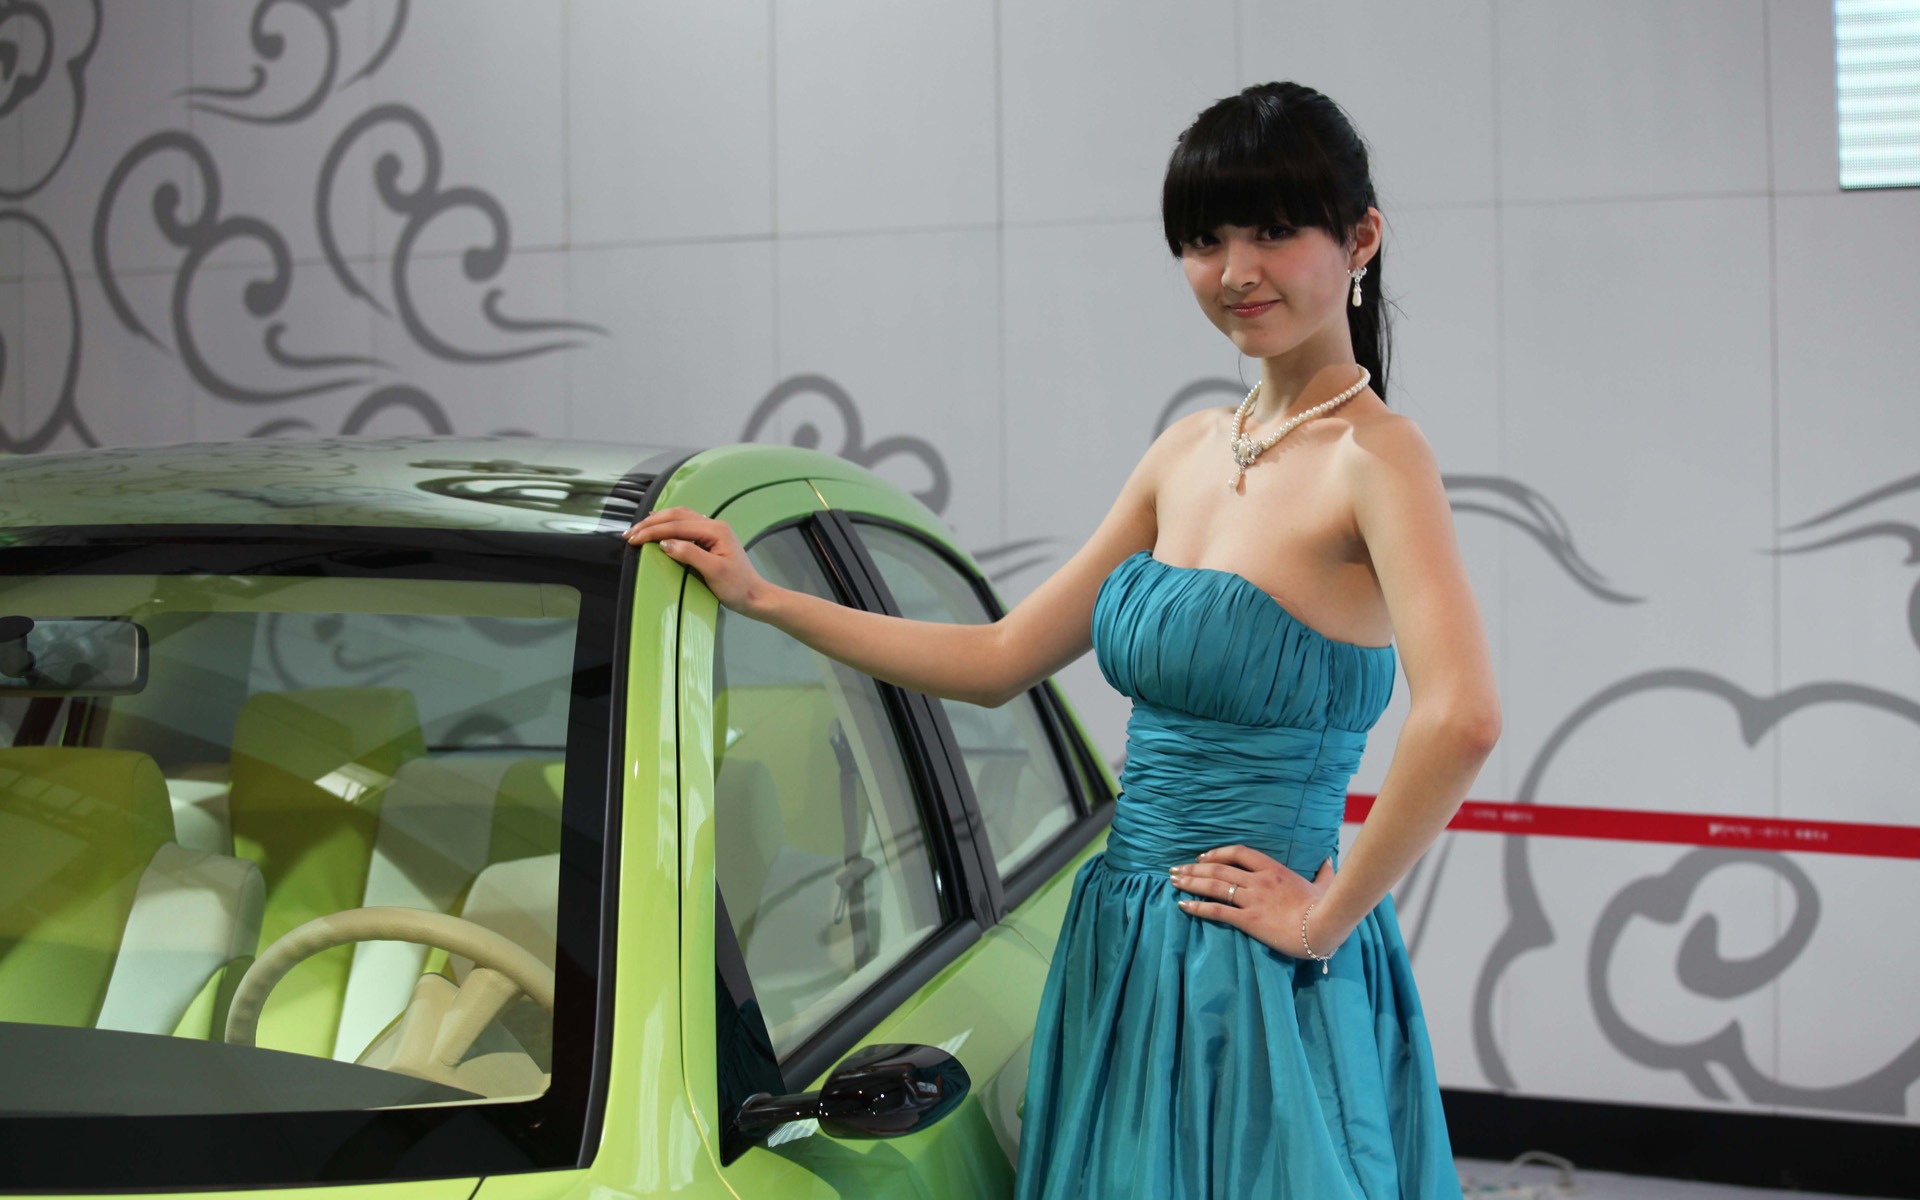 2010 v Pekingu Mezinárodním autosalonu krása (1) (vítr honí mraky práce) #34 - 1920x1200